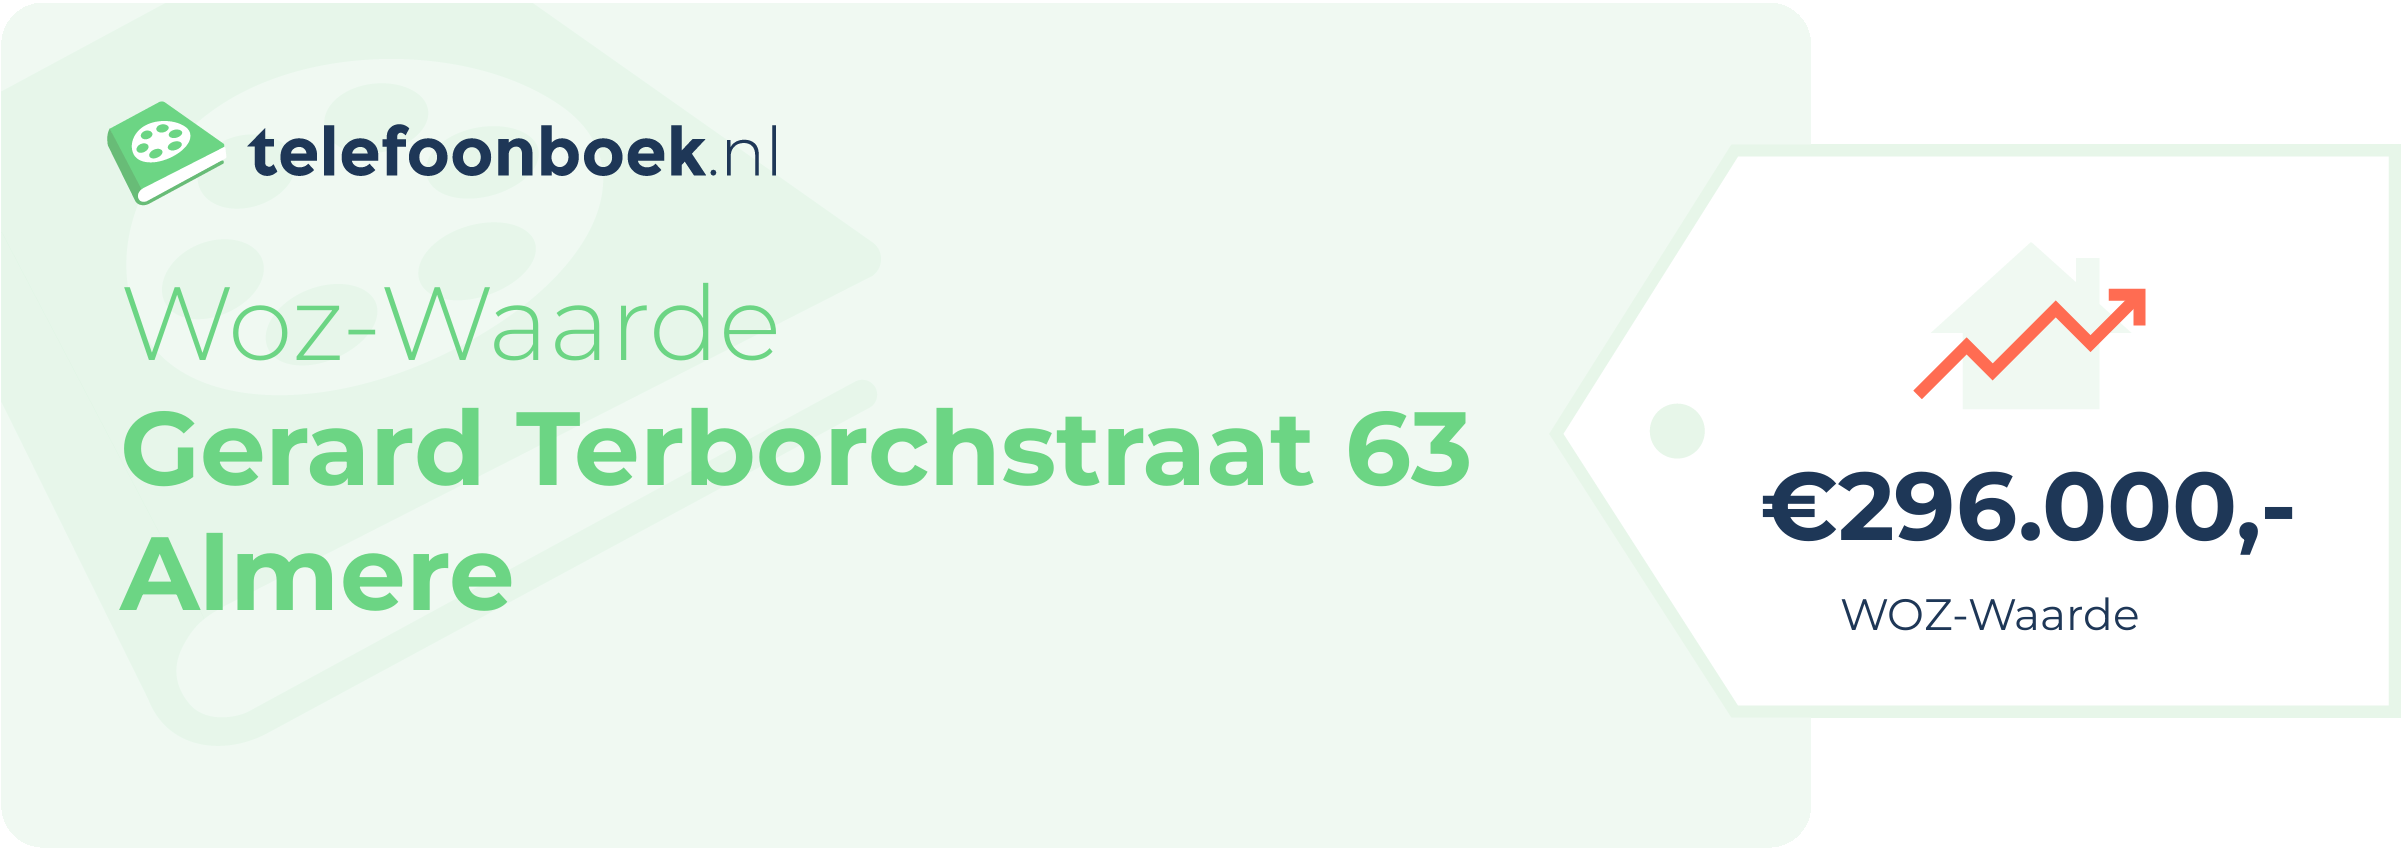 WOZ-waarde Gerard Terborchstraat 63 Almere